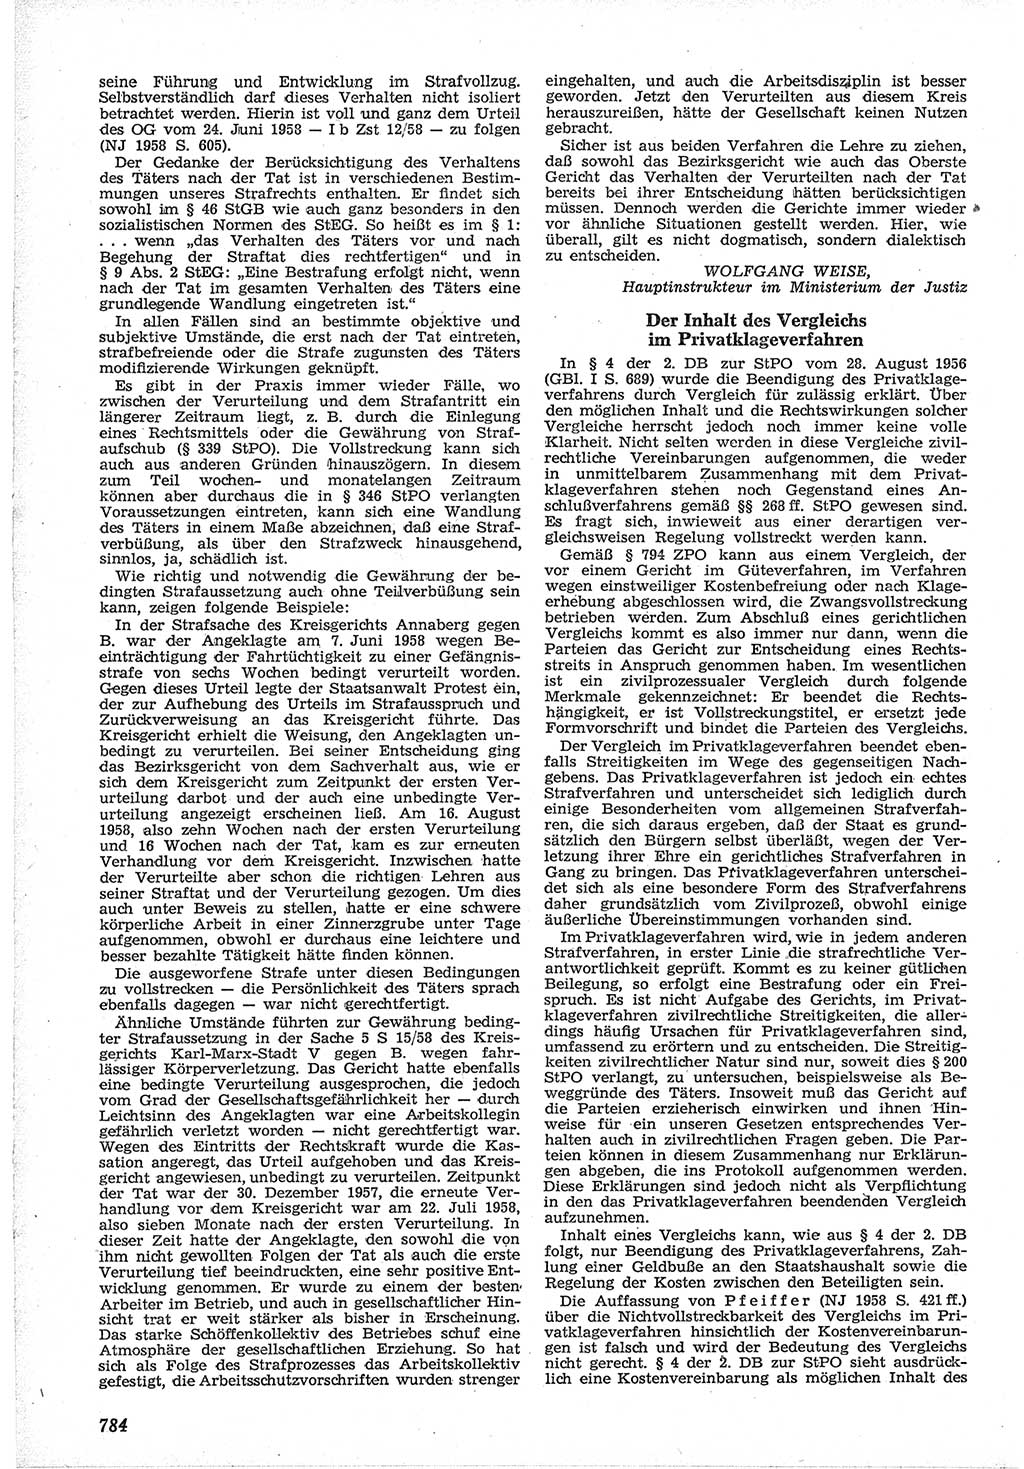 Neue Justiz (NJ), Zeitschrift für Recht und Rechtswissenschaft [Deutsche Demokratische Republik (DDR)], 12. Jahrgang 1958, Seite 784 (NJ DDR 1958, S. 784)